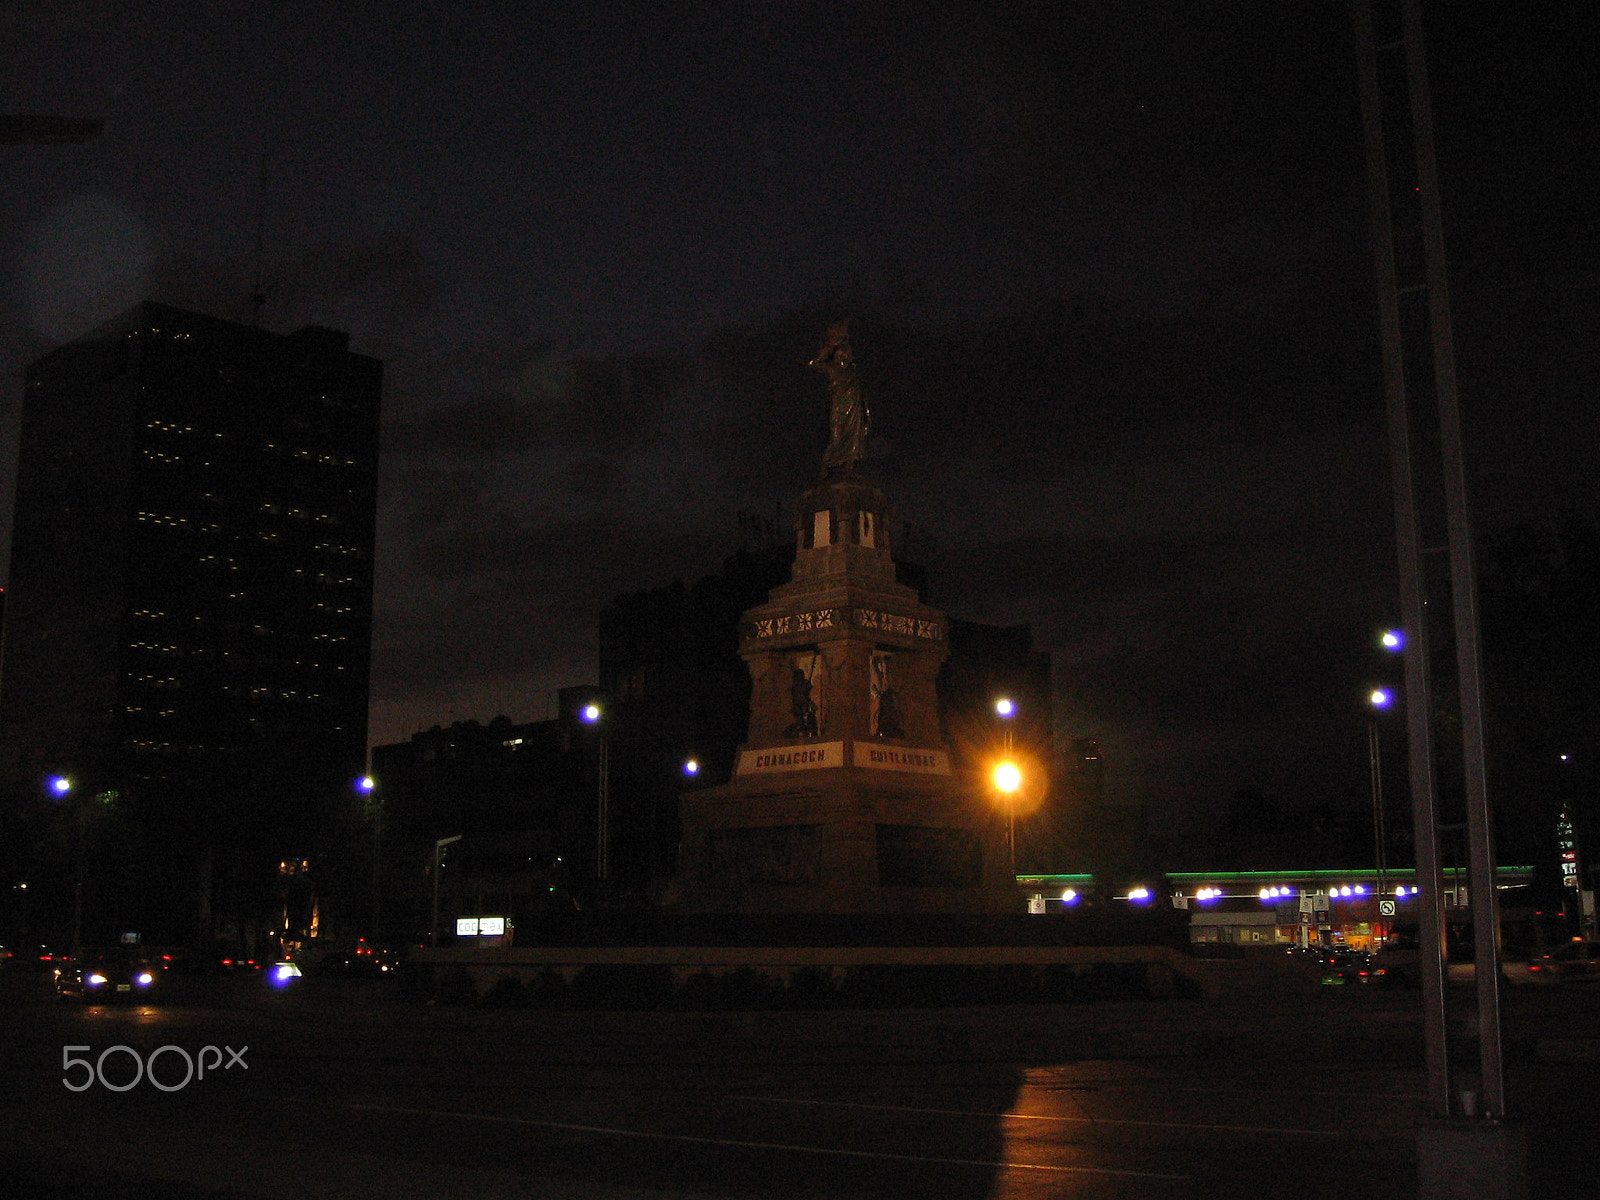 Canon DIGITAL IXUS I sample photo. Night mexico city photography